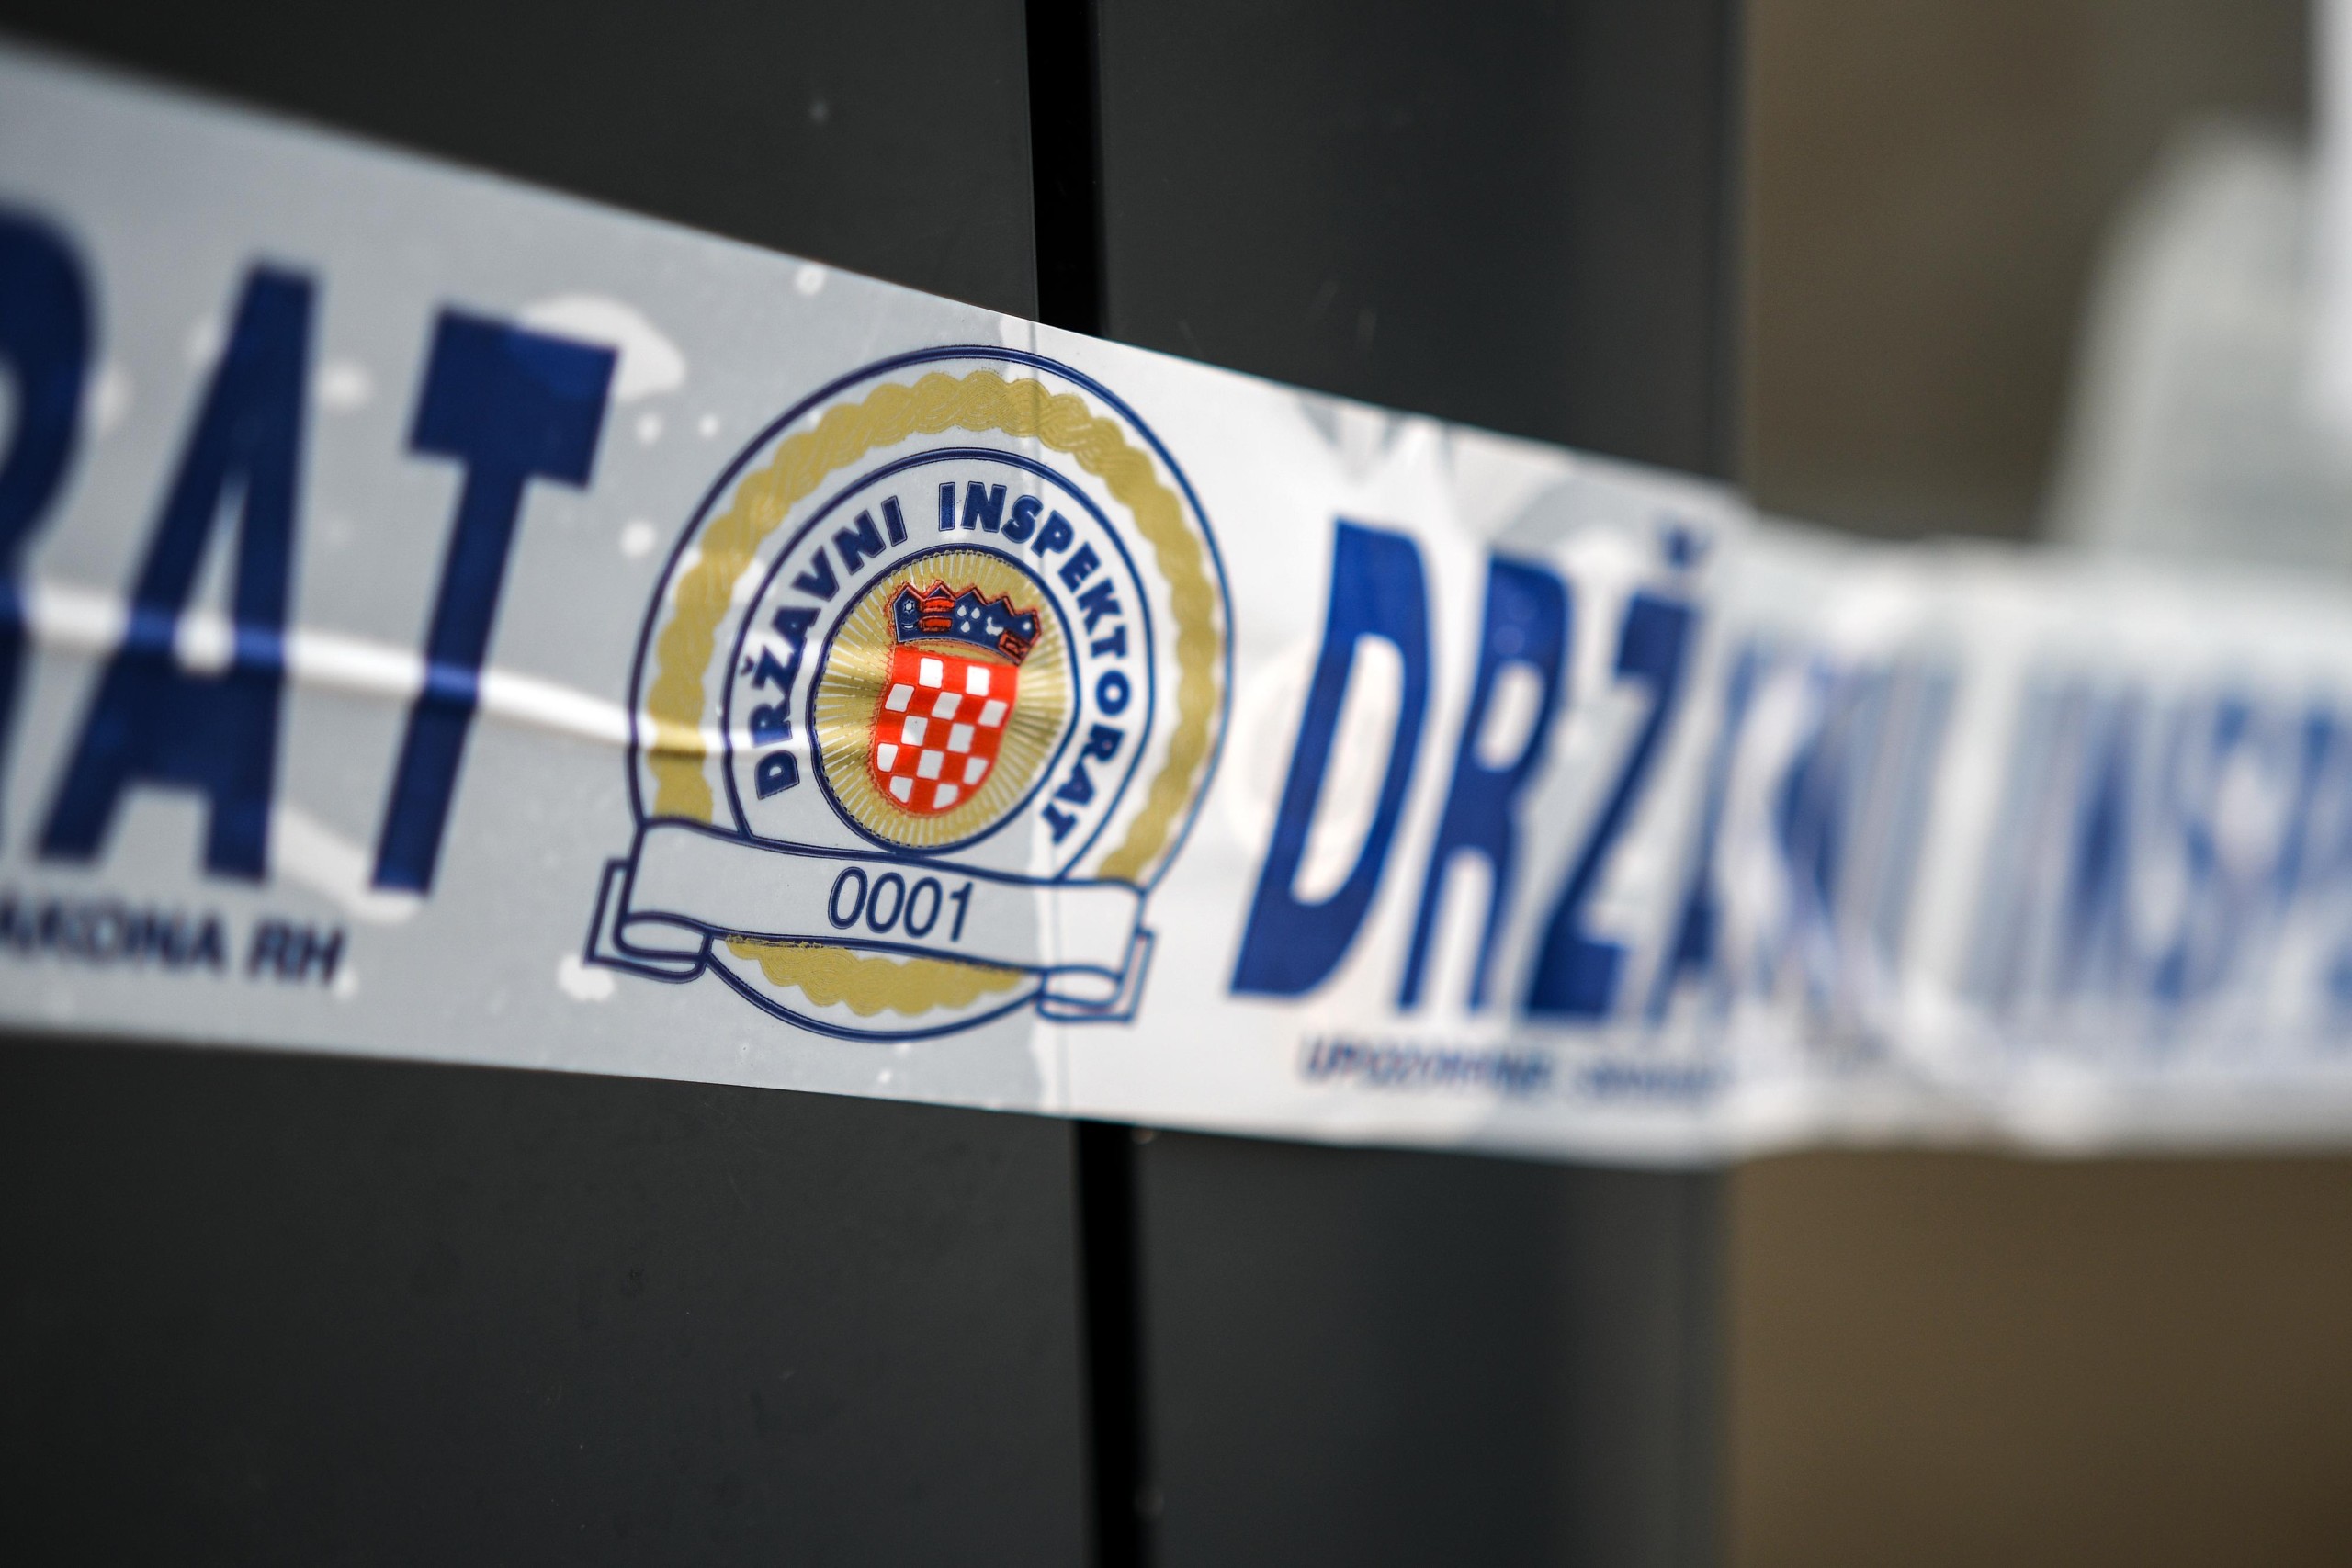 7.2.2021., Zagreb - Drzavni inspektorat zatvorio bistro Passage kod DragasarPhoto: Zoe Sarlija/PIXSELL